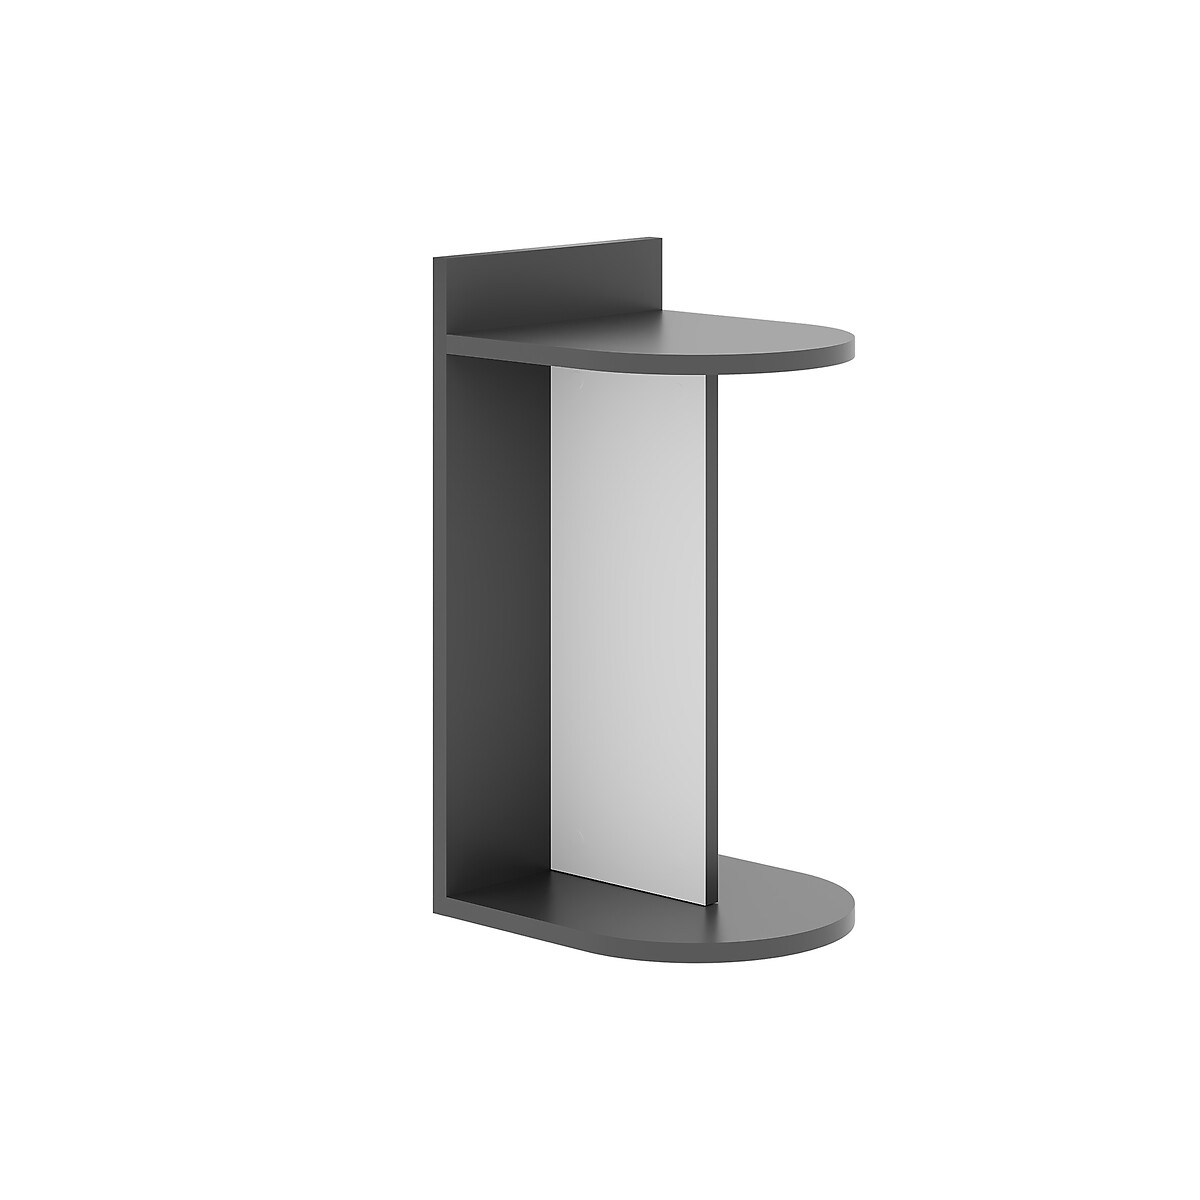 Стол приставной DOM SIDE TABLE единый размер серый приставной столик jaya utility набор из двух предметов приставной столик из французского дуба серого черного цвета для спальни гостиной